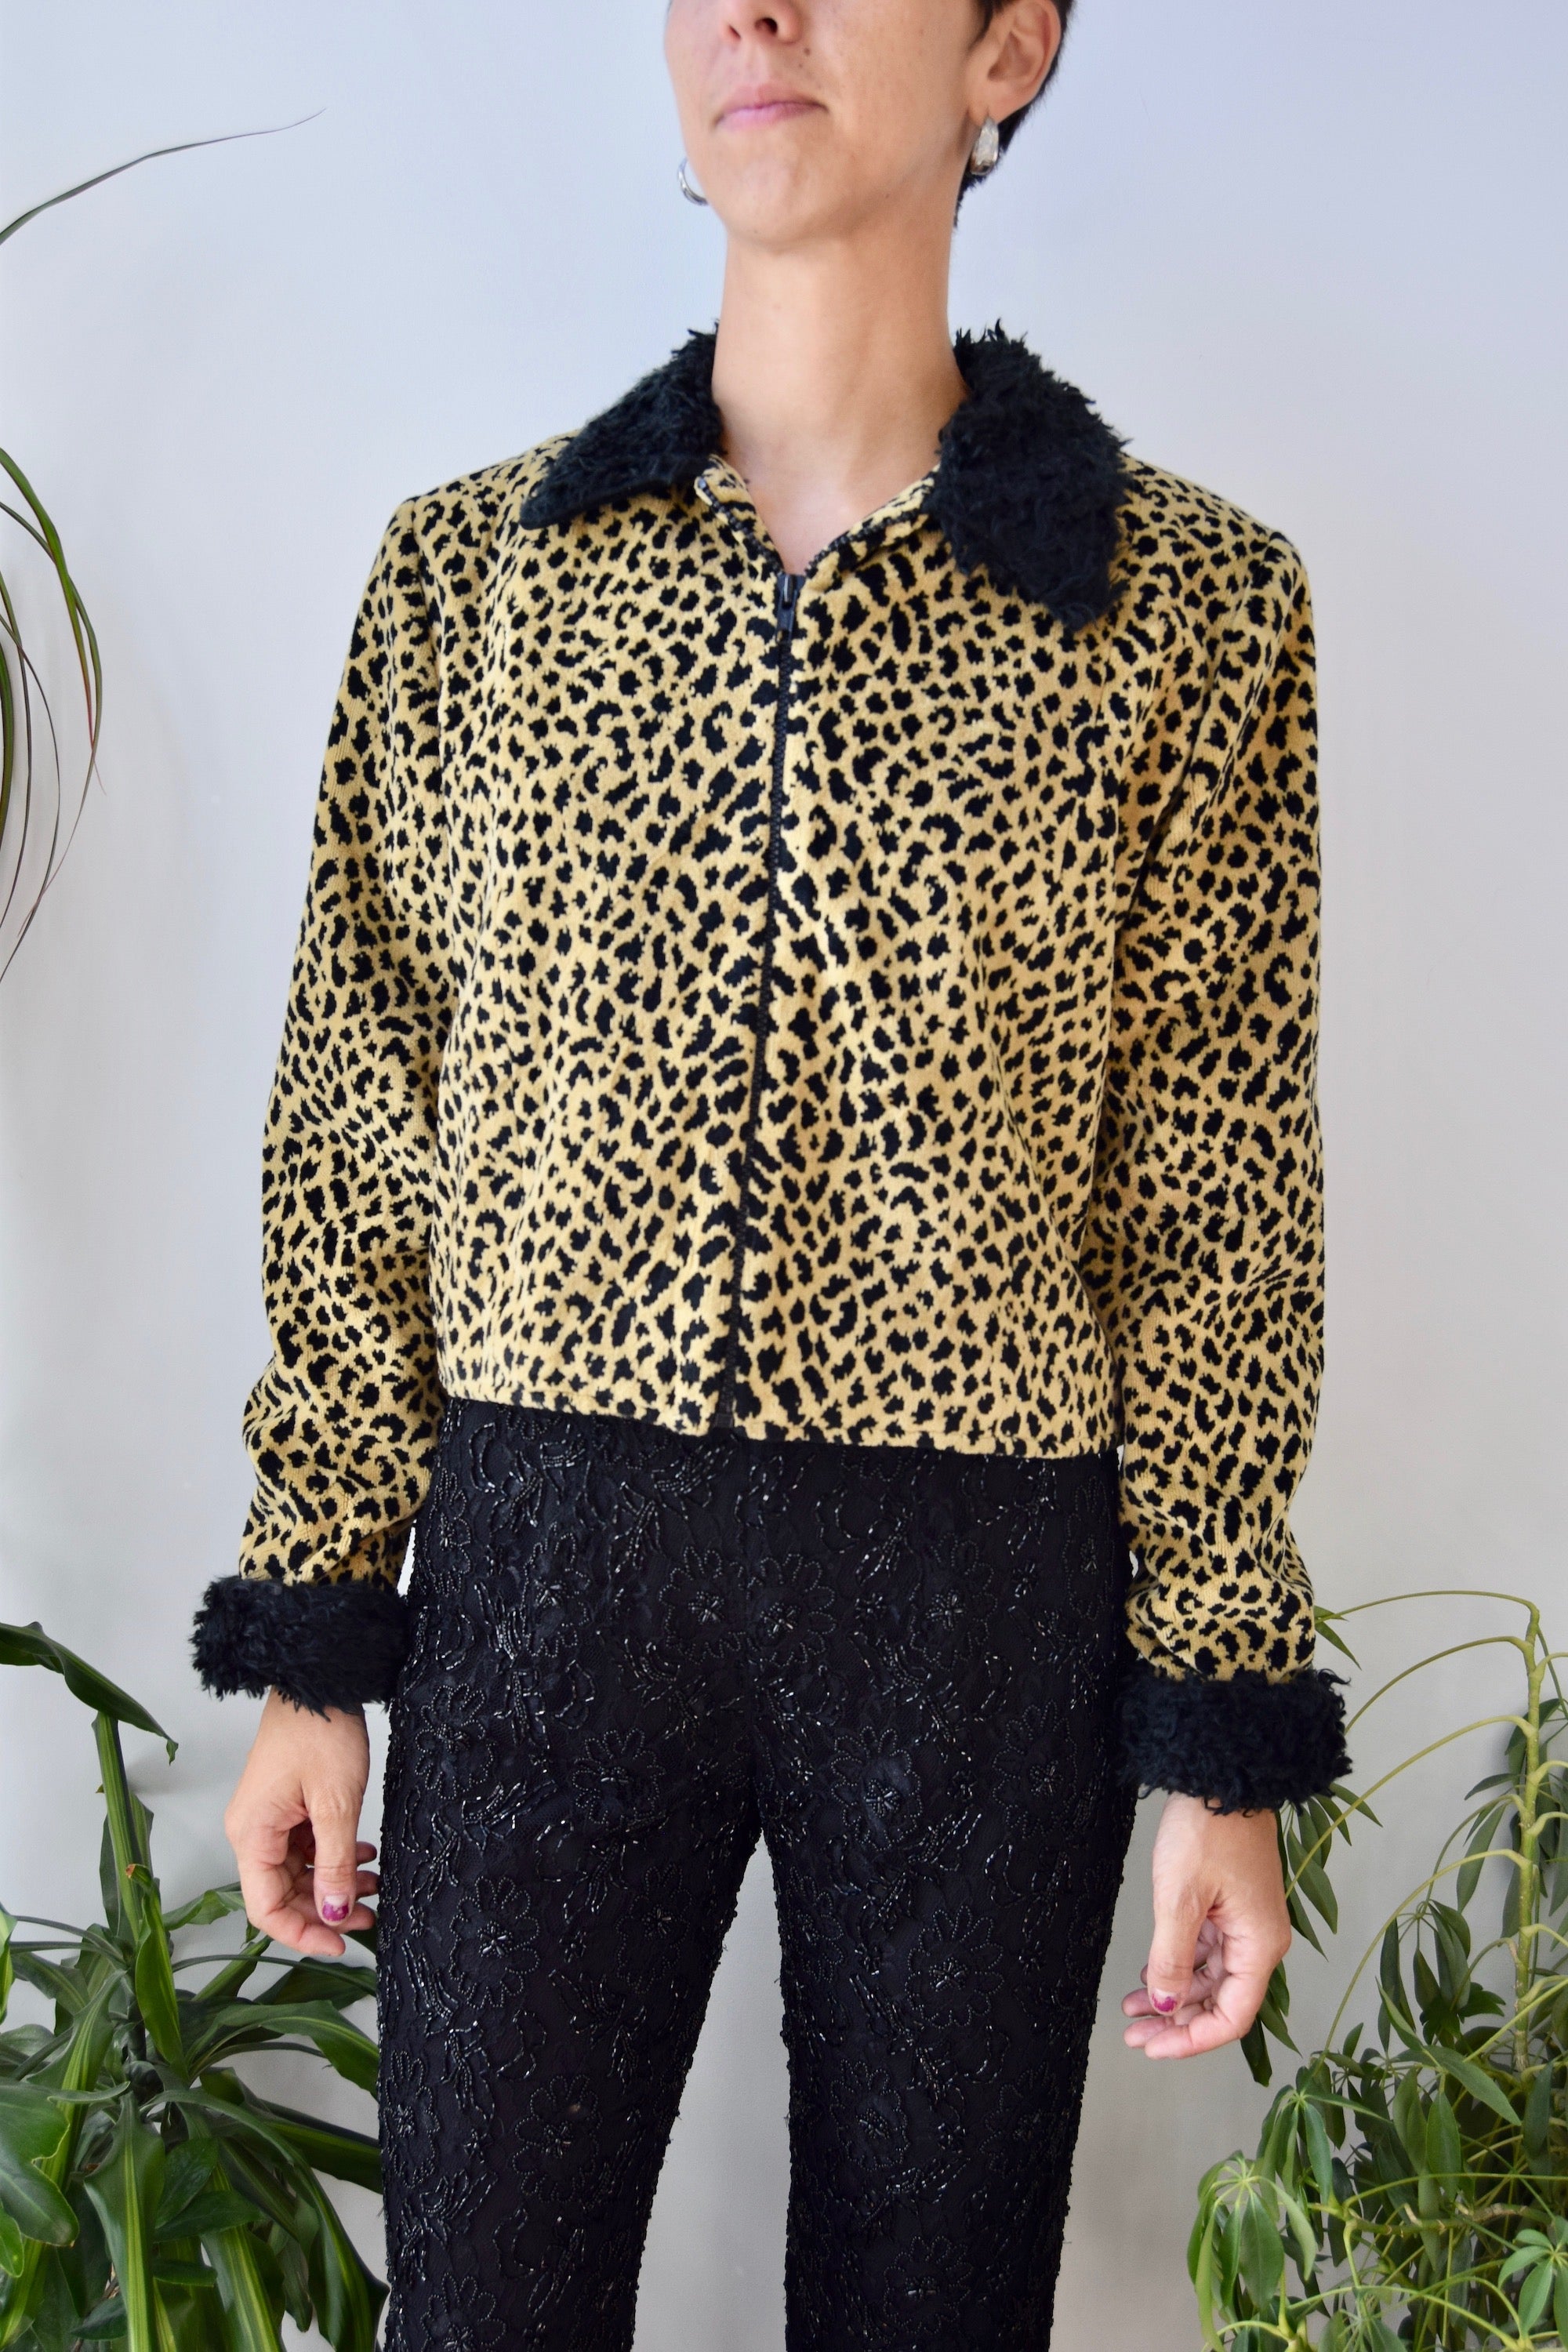 Fran Drescher Cheetah Jacket